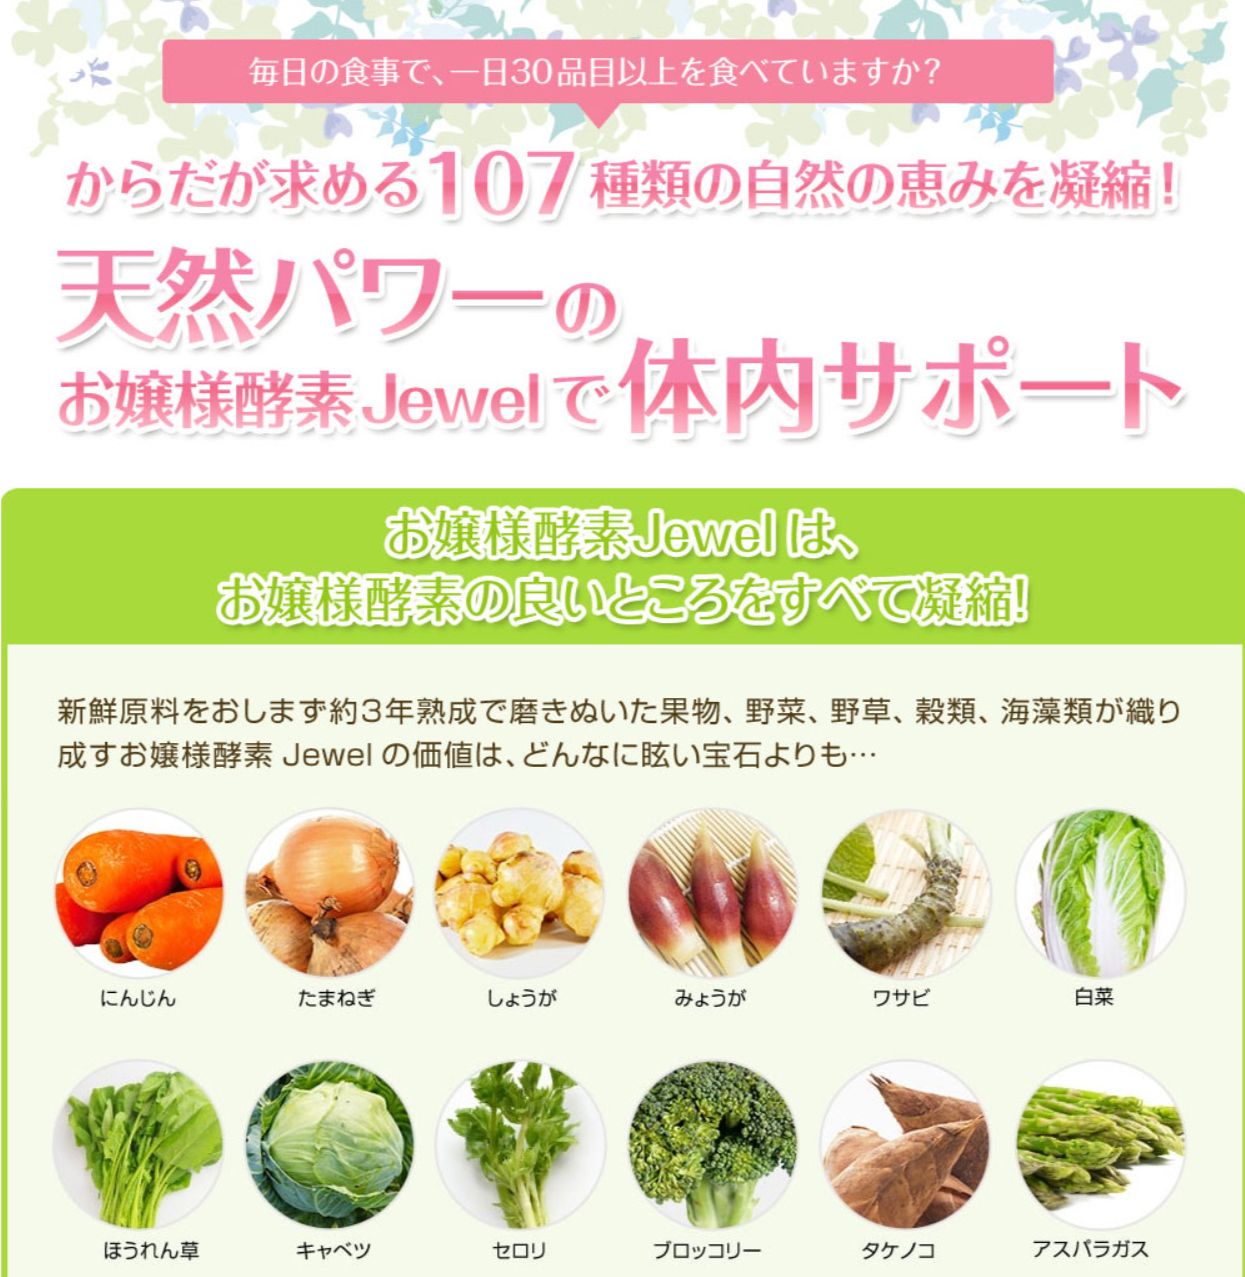 【流行り】値下げ！お嬢様酵素jewel 48袋 おまけつき❗ ダイエット食品